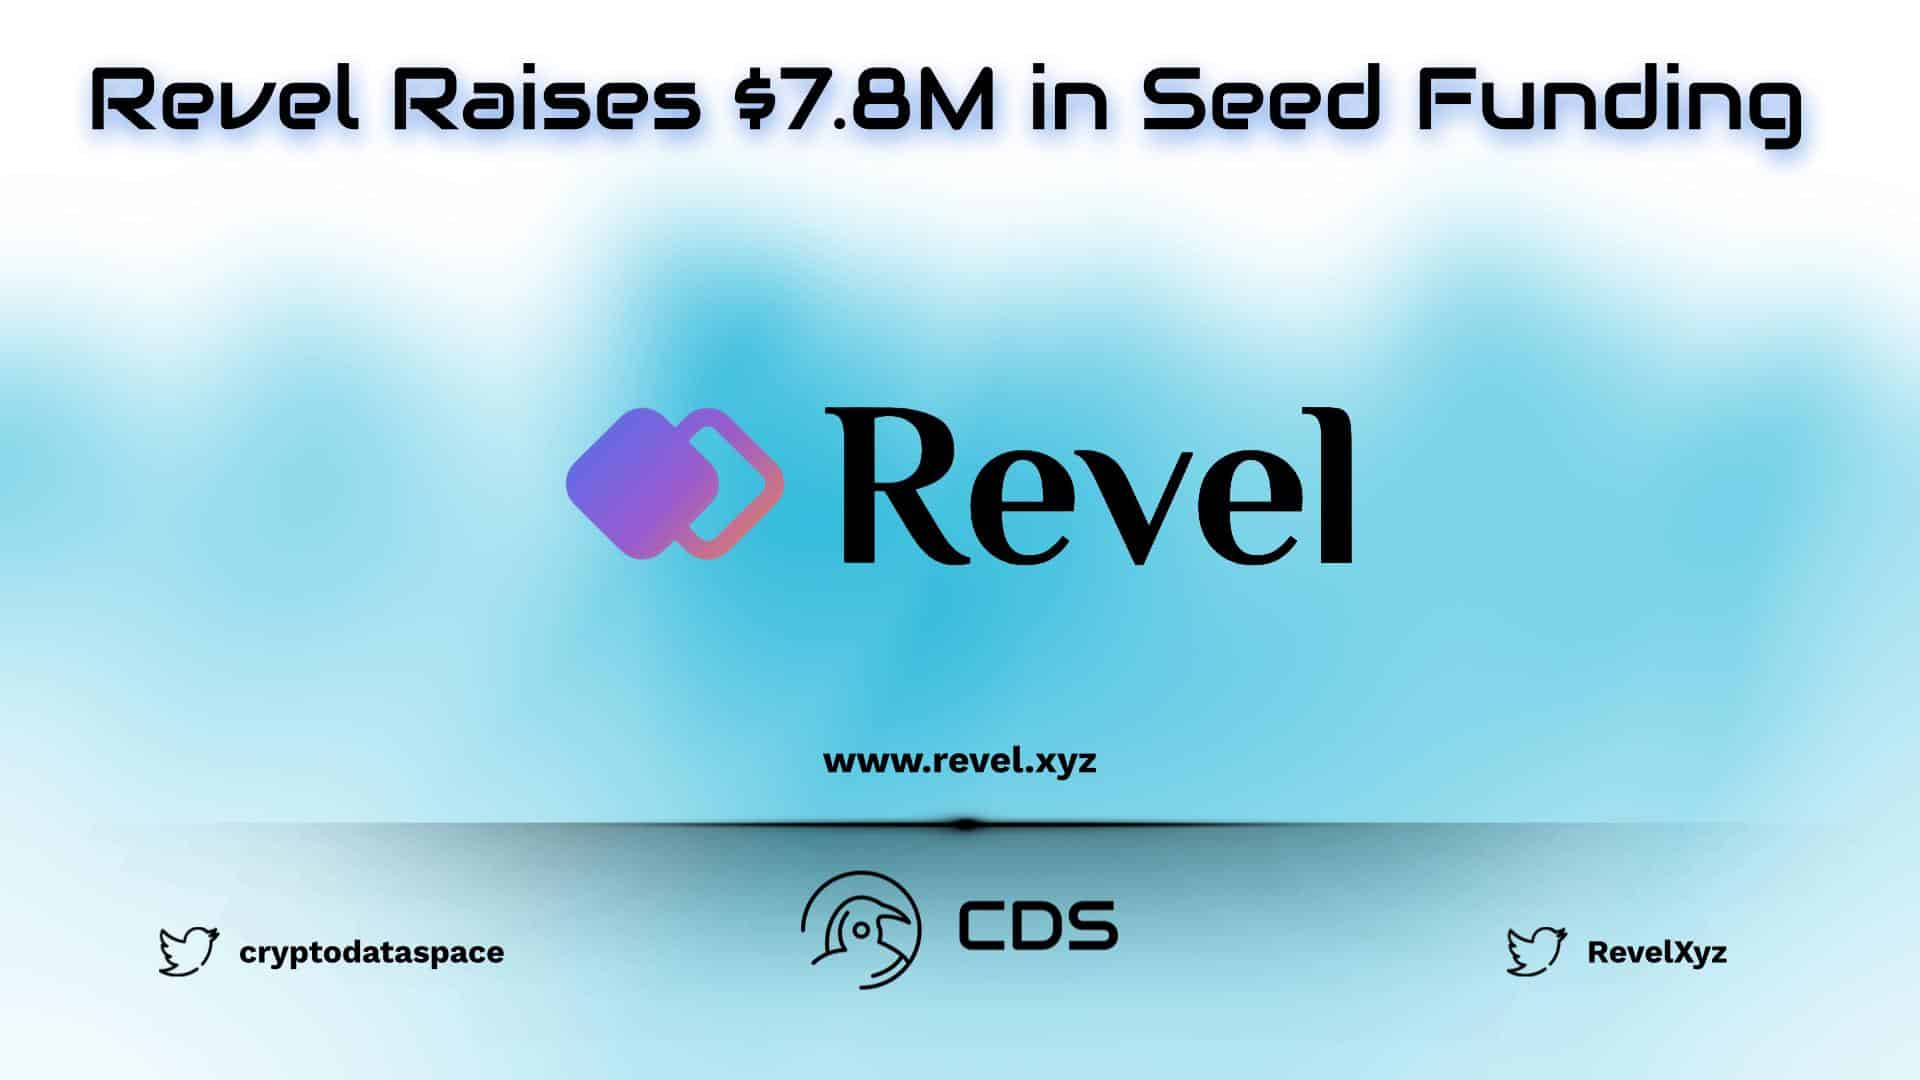 Revel Raises $7.8M in Seed Funding